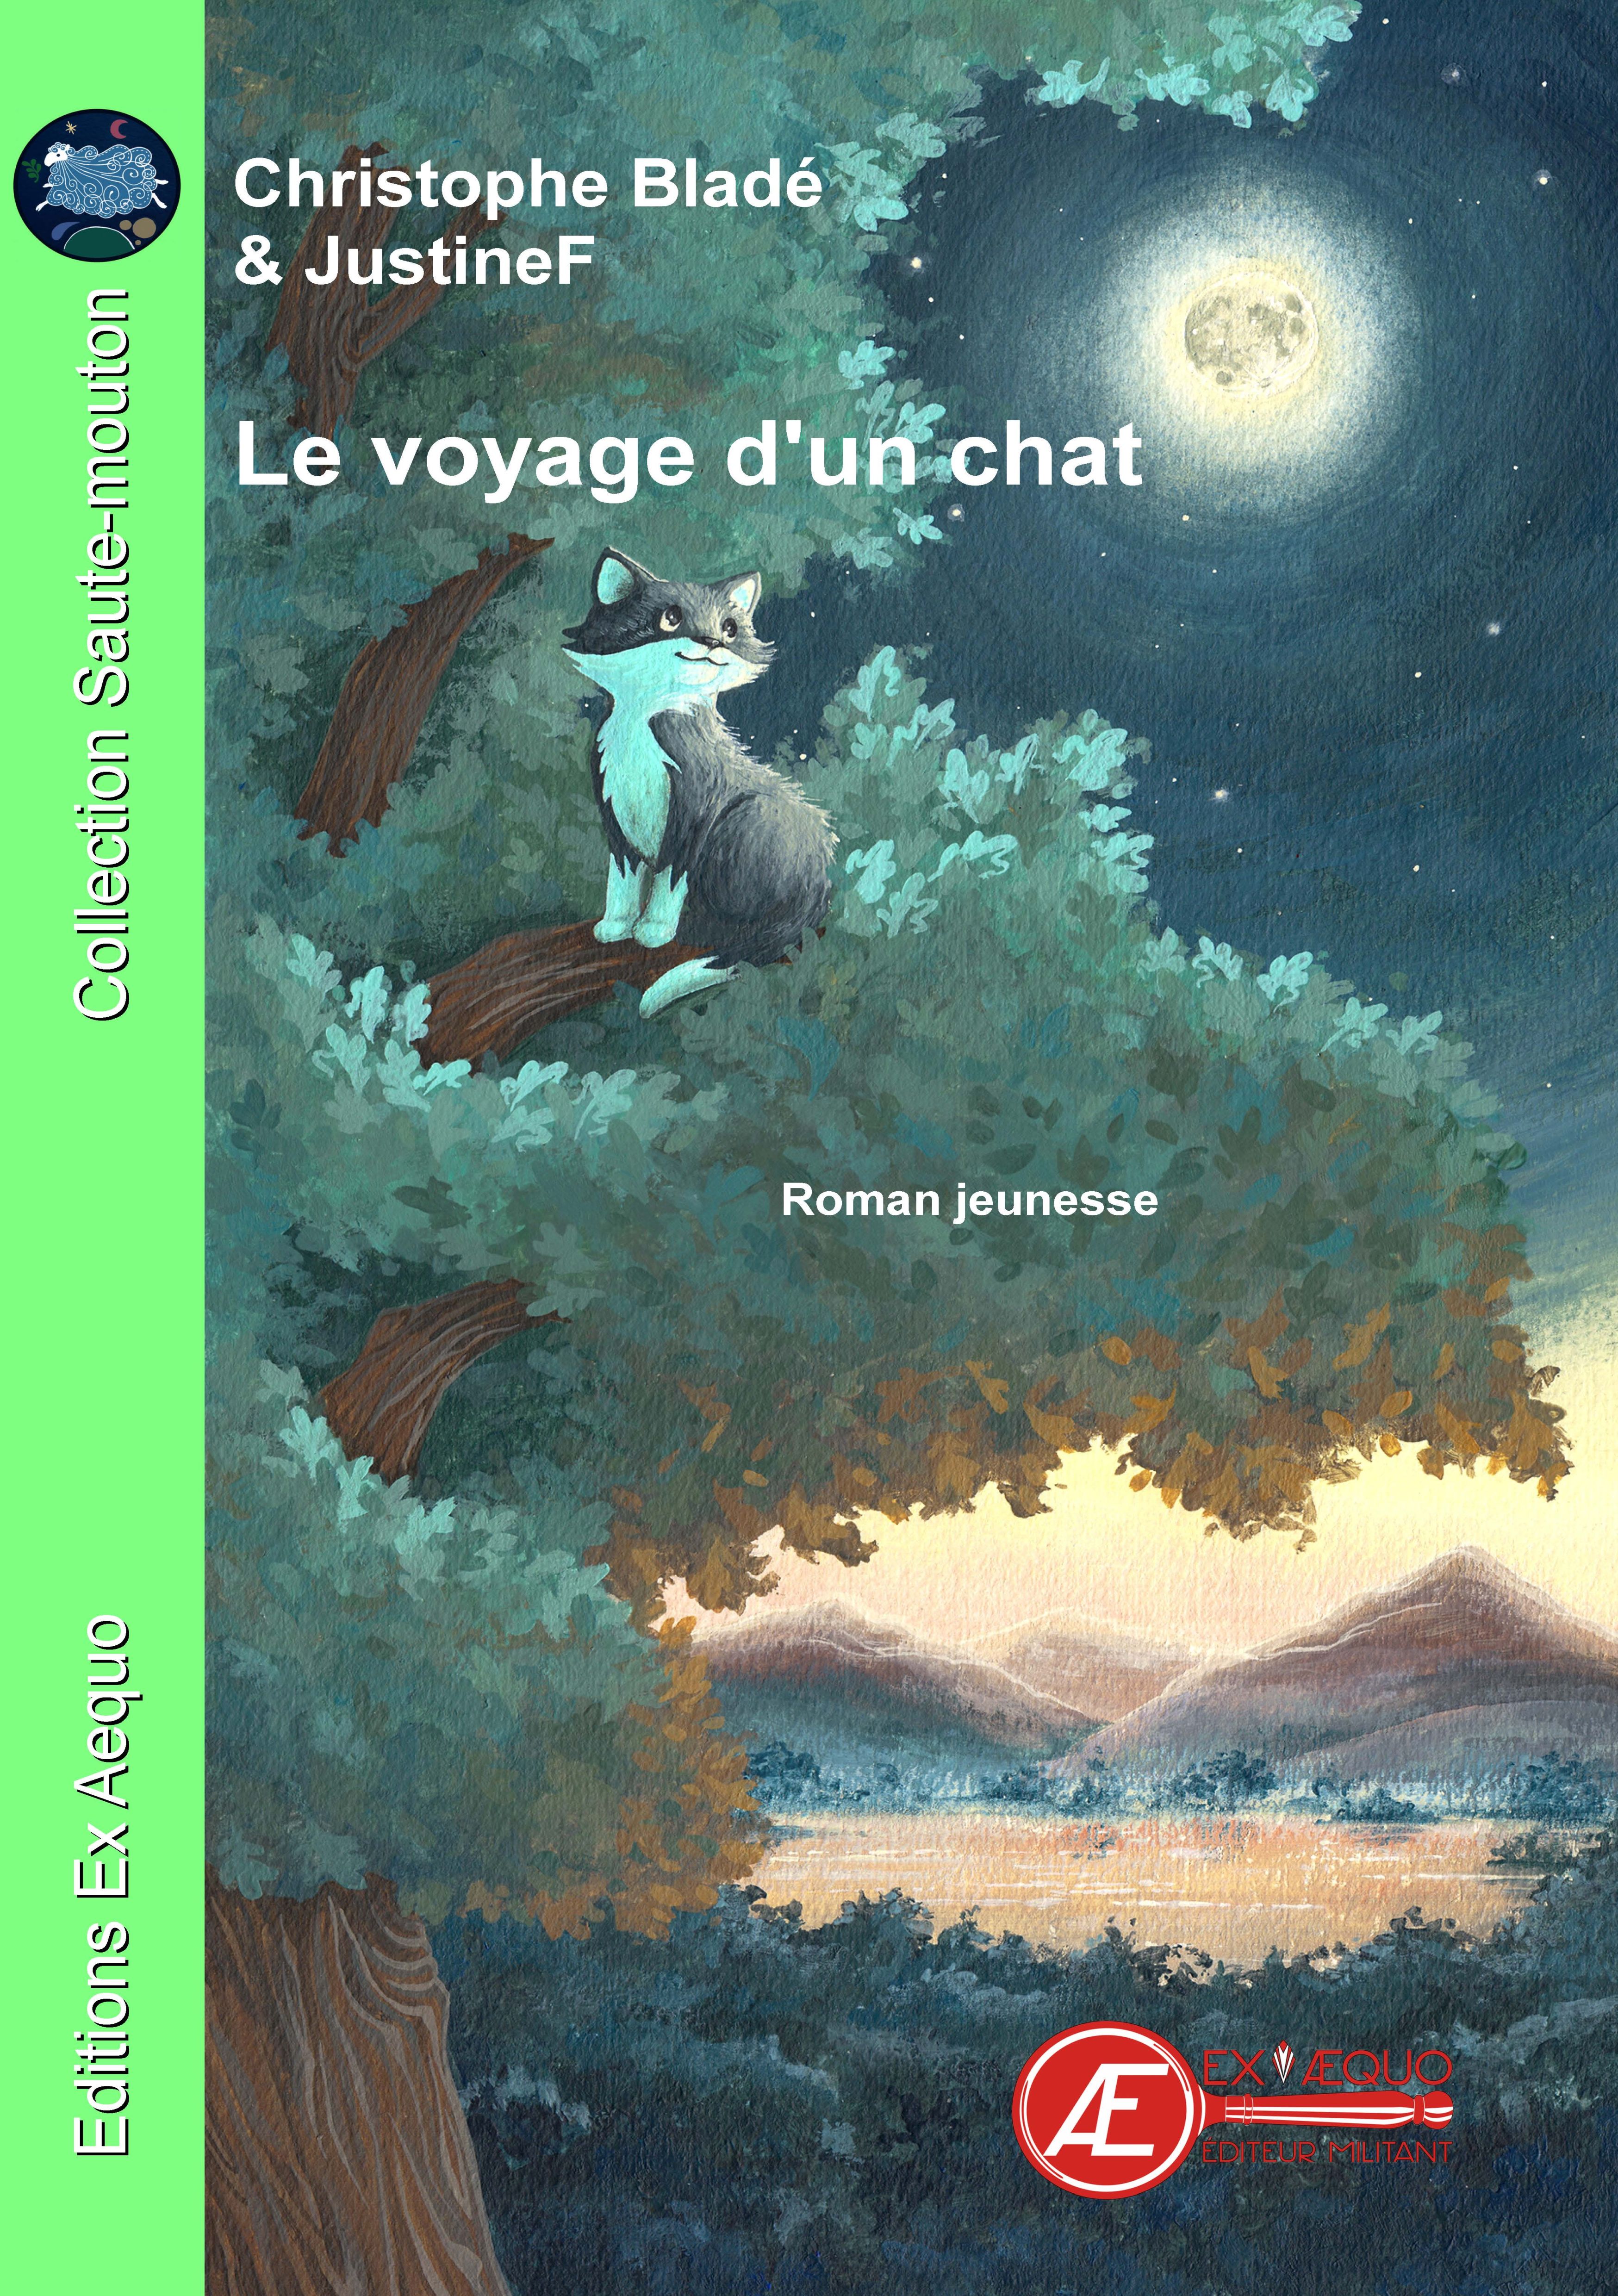 You are currently viewing Le voyage d’un chat, de Christophe Bladé & Justine Florio